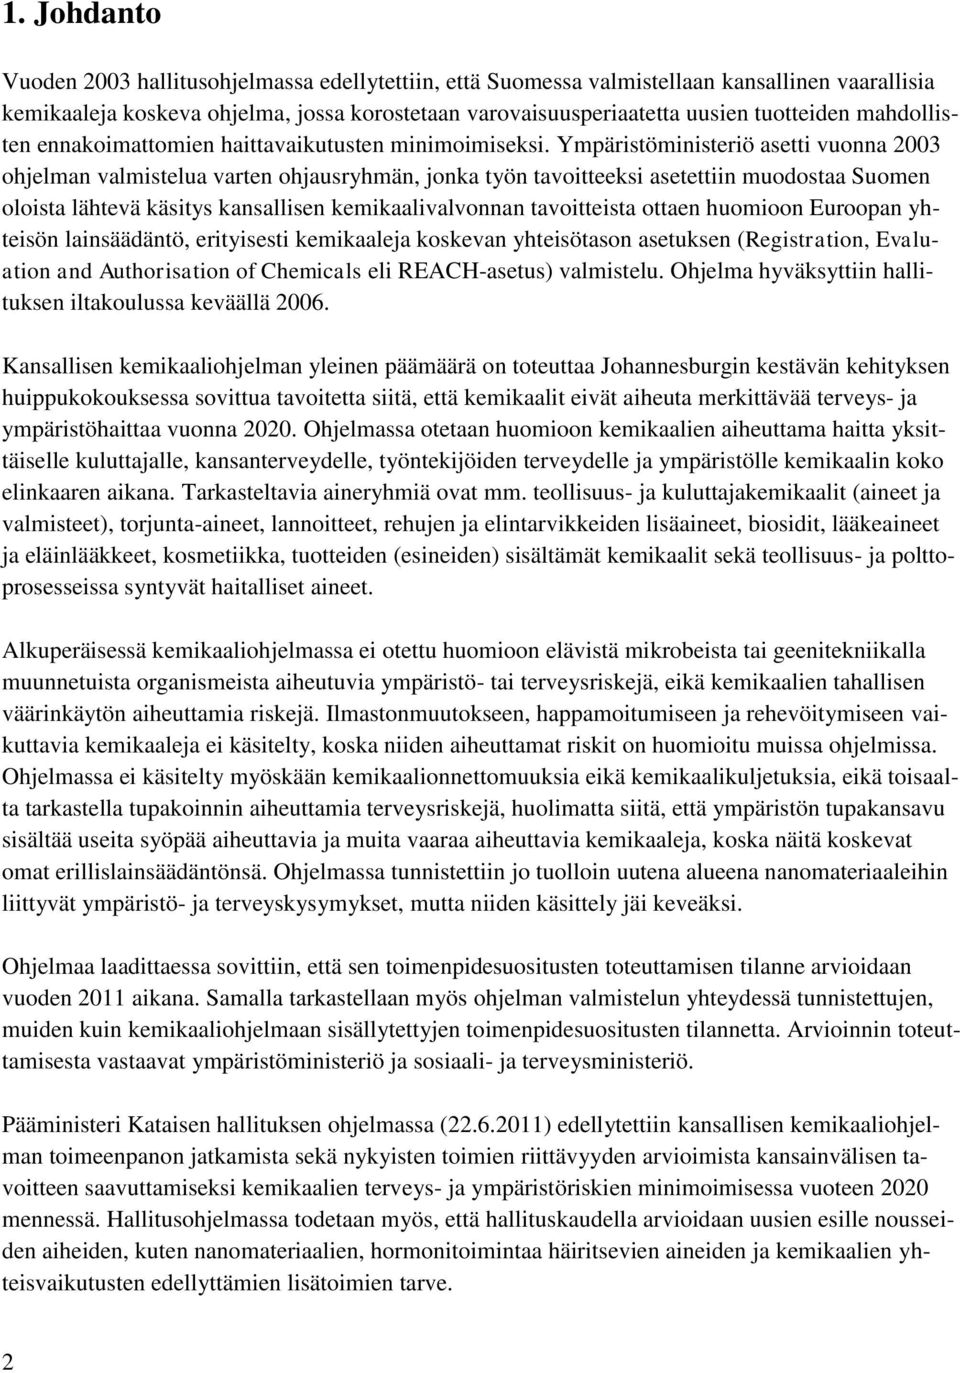 Ympäristöministeriö asetti vuonna 2003 ohjelman valmistelua varten ohjausryhmän, jonka työn tavoitteeksi asetettiin muodostaa Suomen oloista lähtevä käsitys kansallisen kemikaalivalvonnan